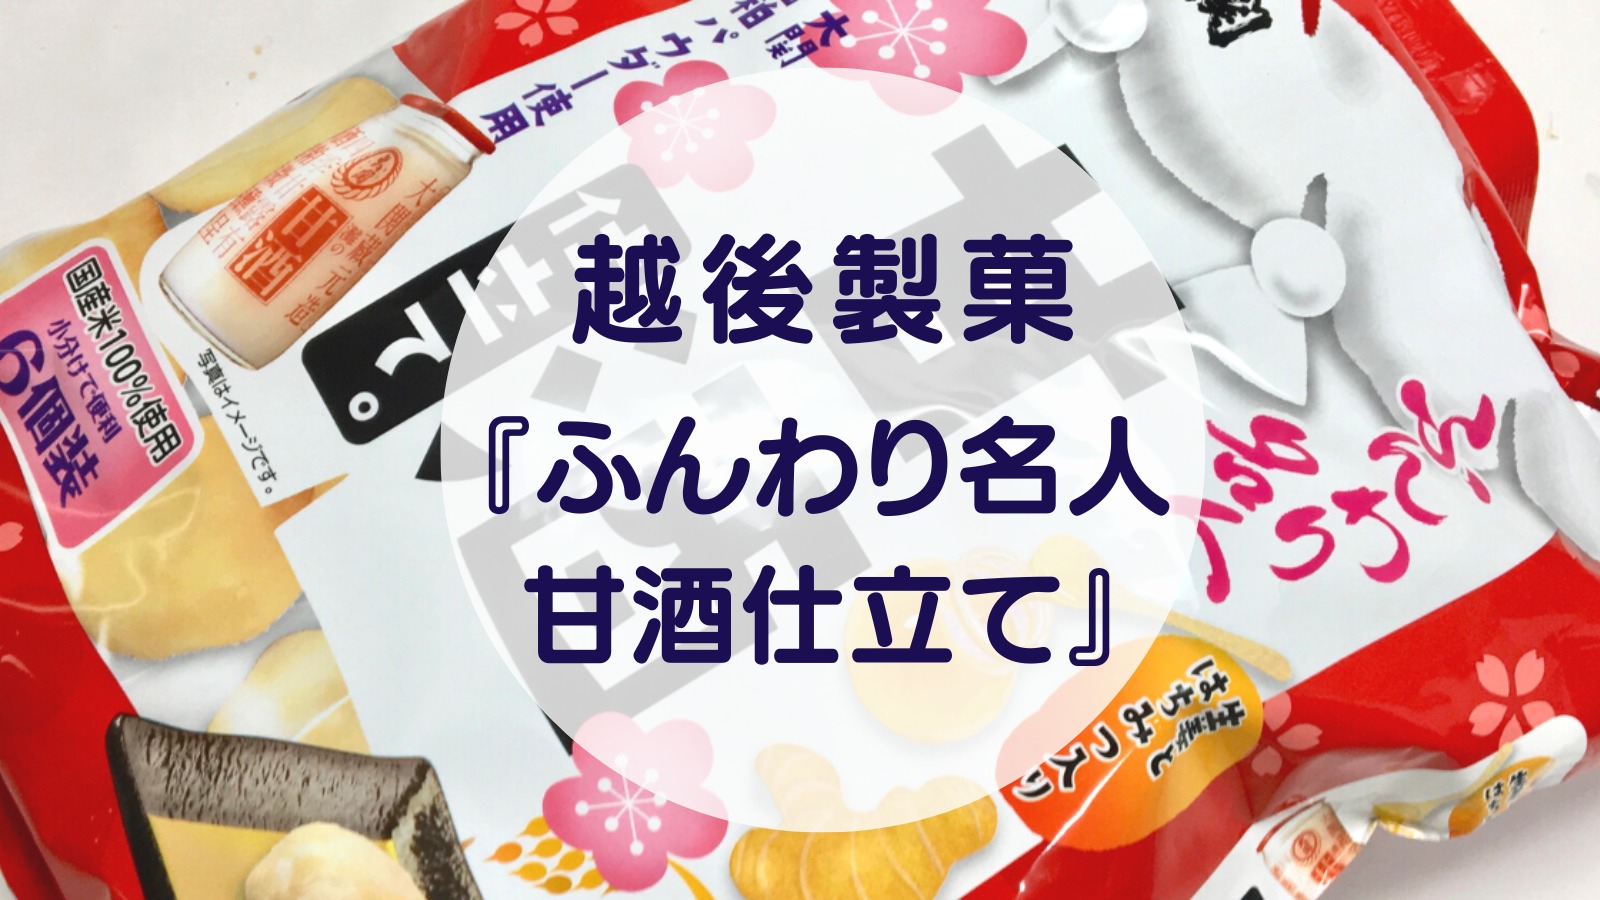 [Amazake sweets]Echigo Seika[Funwari meijin amazake jitate][Amazake sweets]Echigo Seika[Funwari meijin amazake jitate](eyecatch)